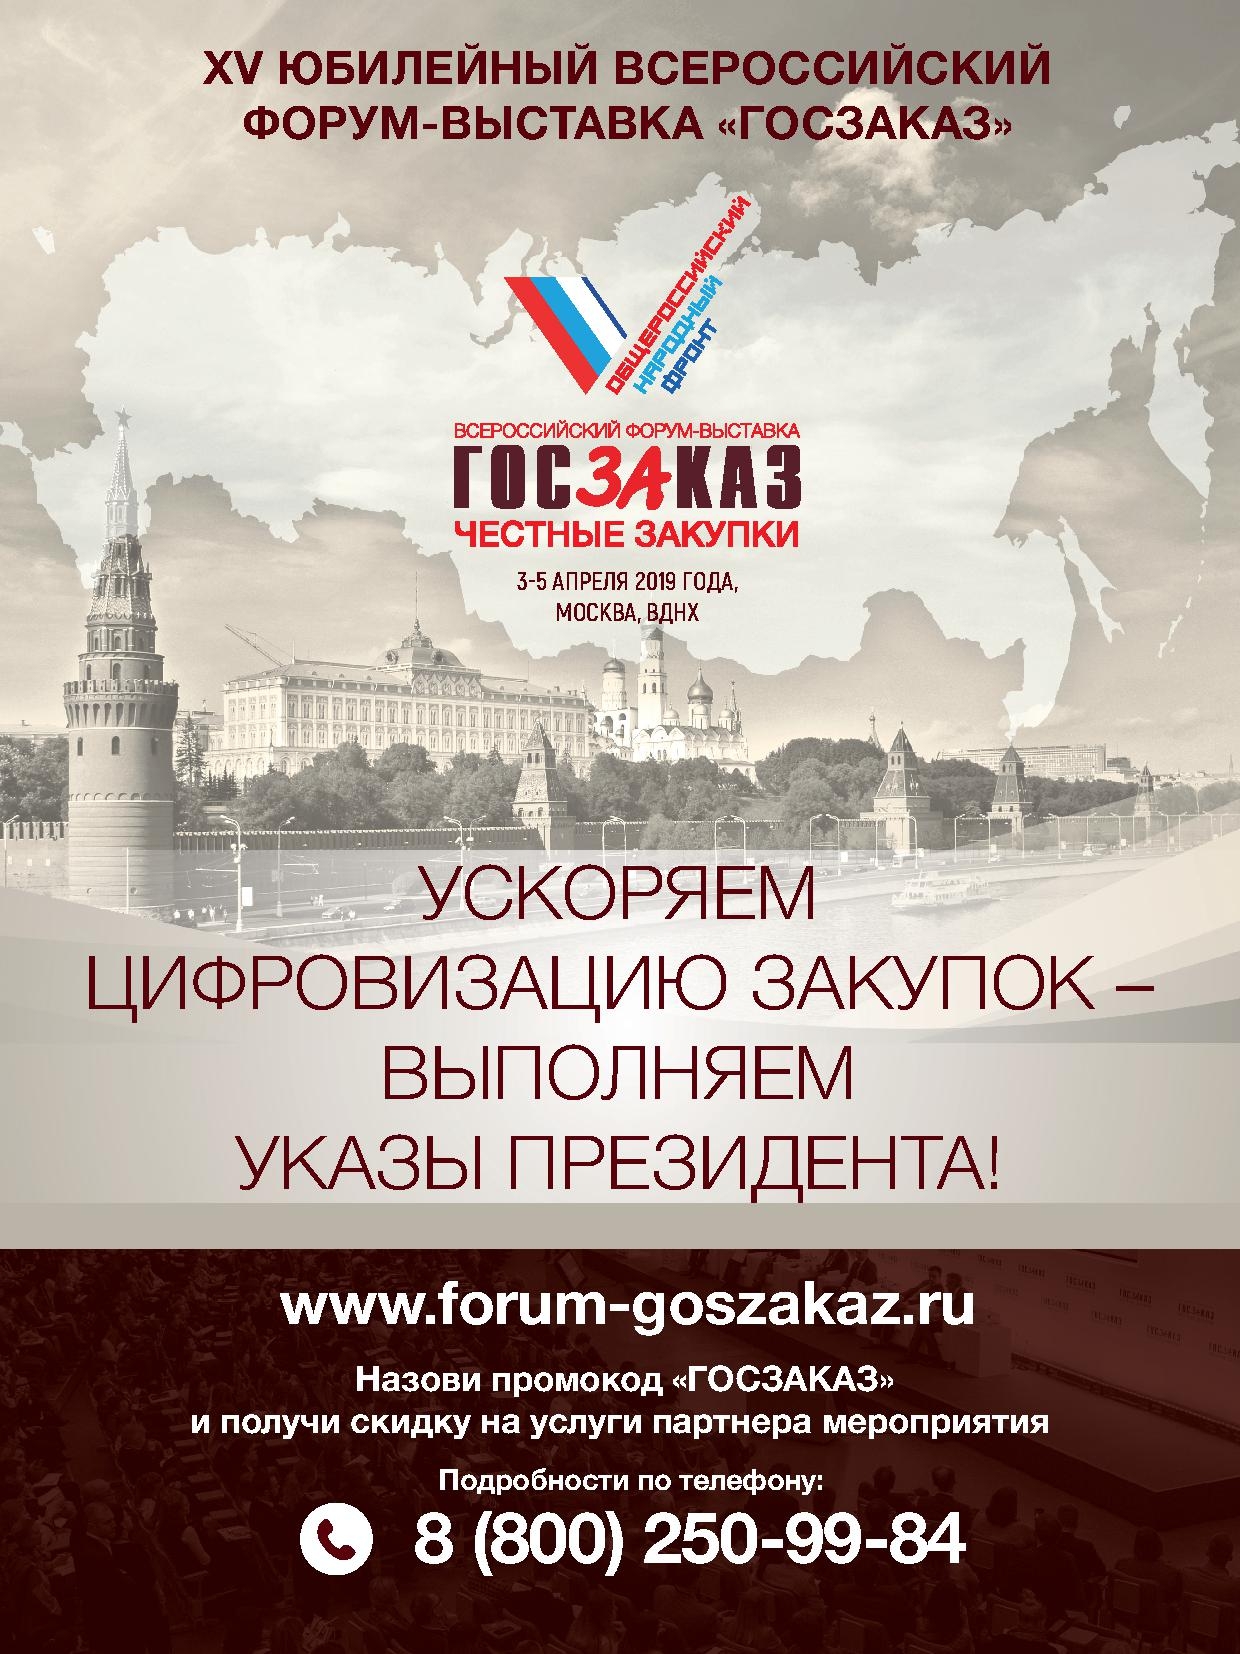 XV Всероссийская Форум-выставка «ГОСЗАКАЗ» состоится 3 – 5 апреля 2019 года в г. Москве на ВДНХ.